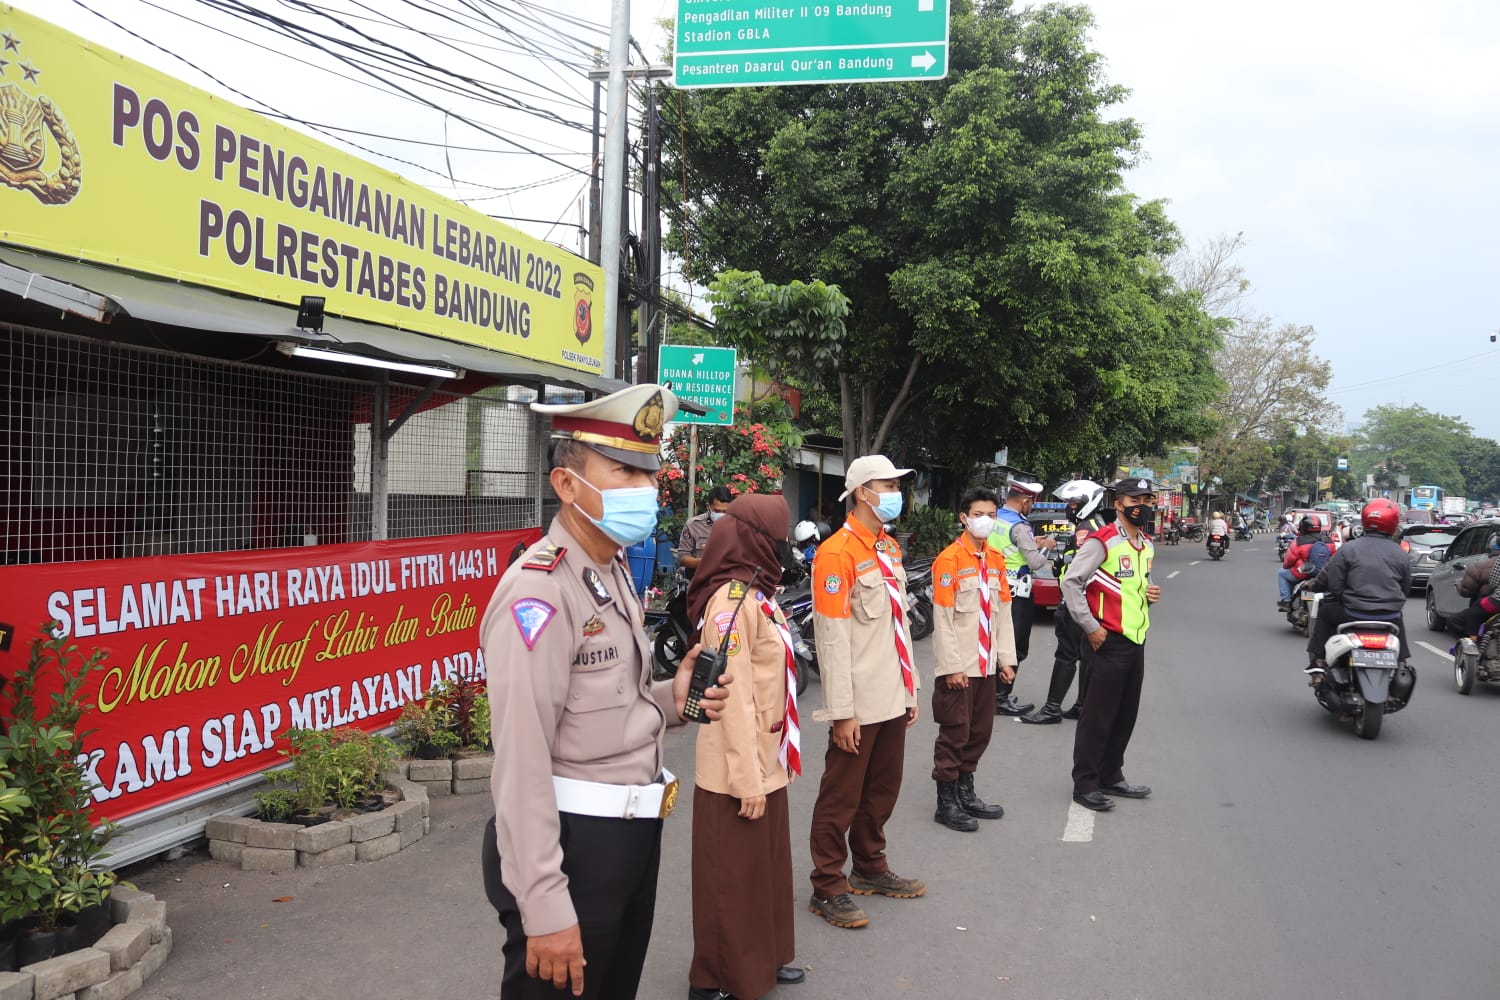 Ipda Mustari tengah melakukan pemantauan arus lalu lintas di Bunderan Cibiru, Kota Bandung Pada Sabtu (30/4) (Arvi/Jabarekspres)